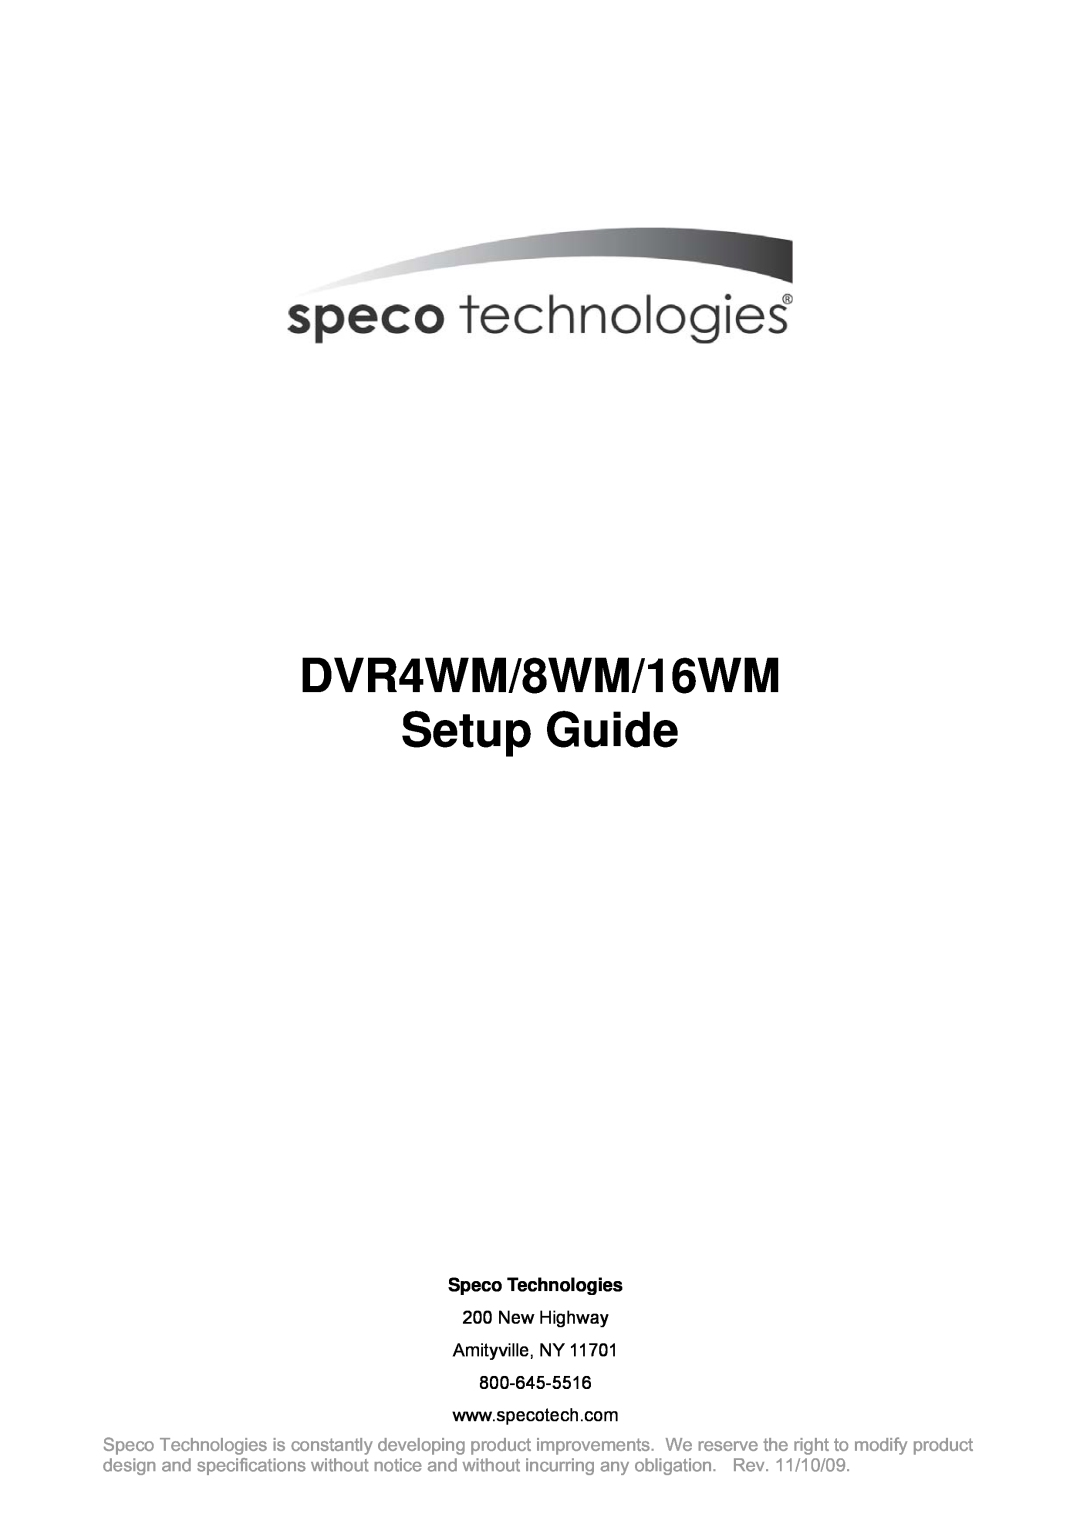 Speco Technologies setup guide DVR4WM/8WM/16WM Setup Guide, Speco Technologies, New Highway Amityville, NY 